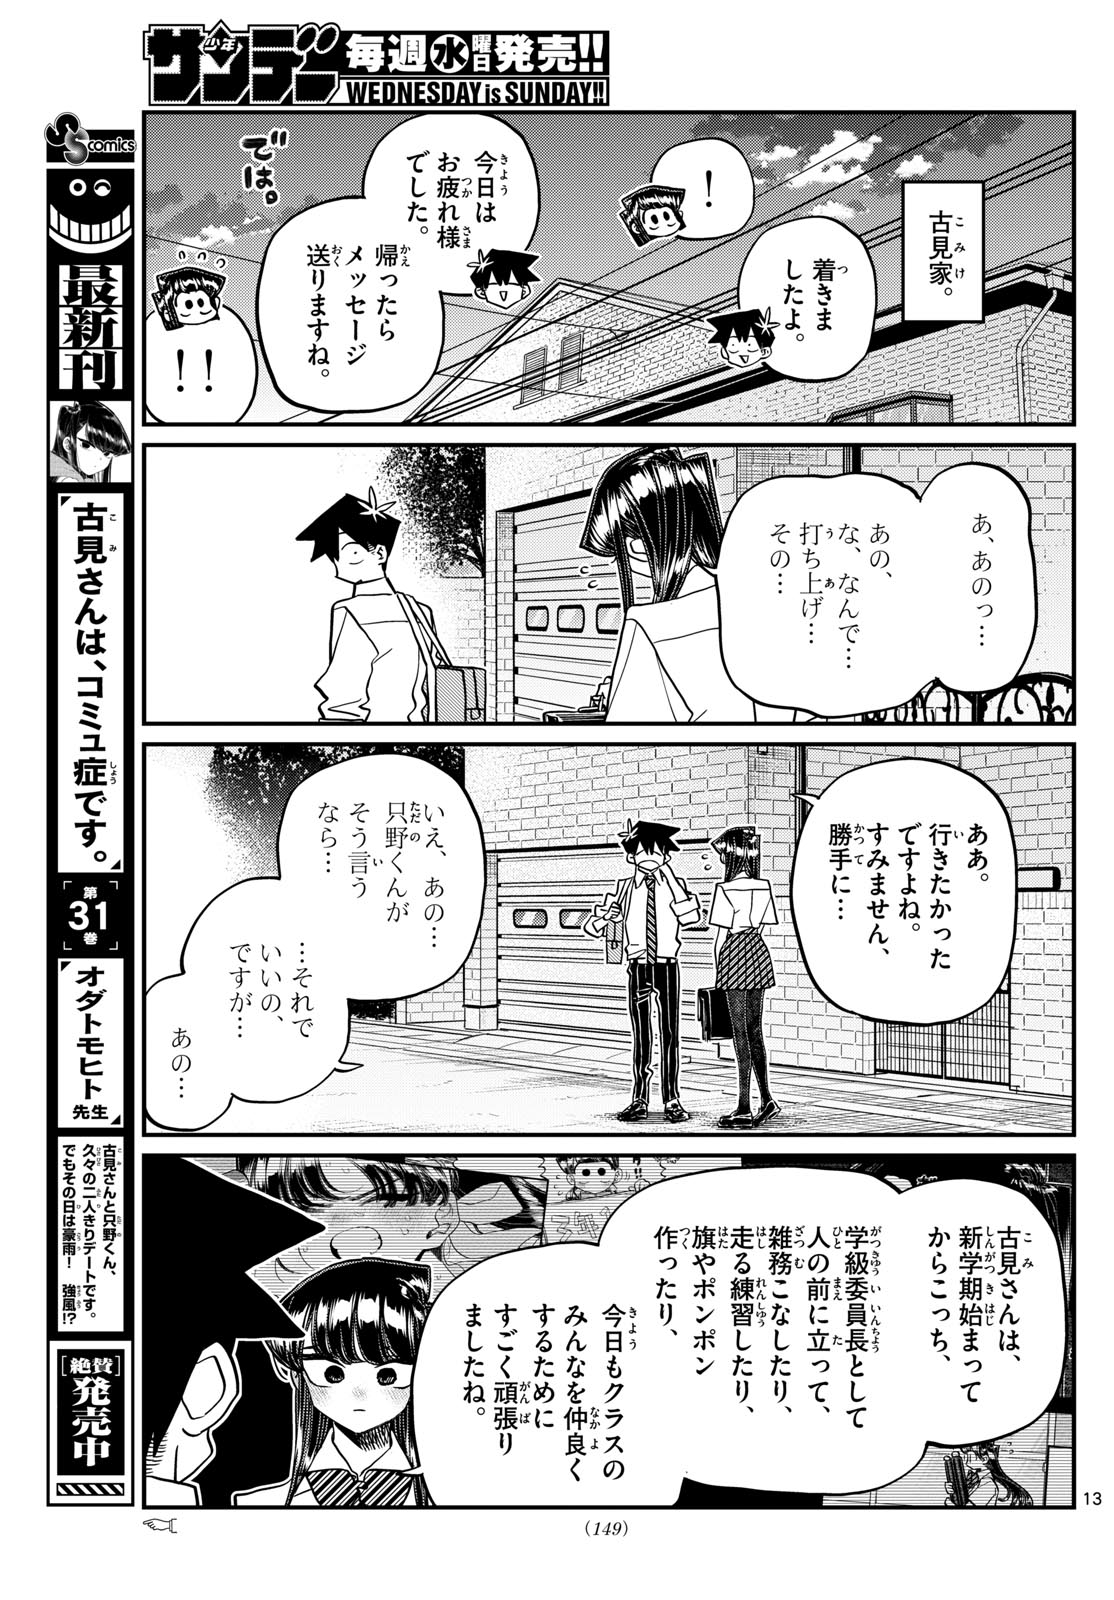 Komi-san wa Komyushou Desu Chapter 432 – Rawkuma